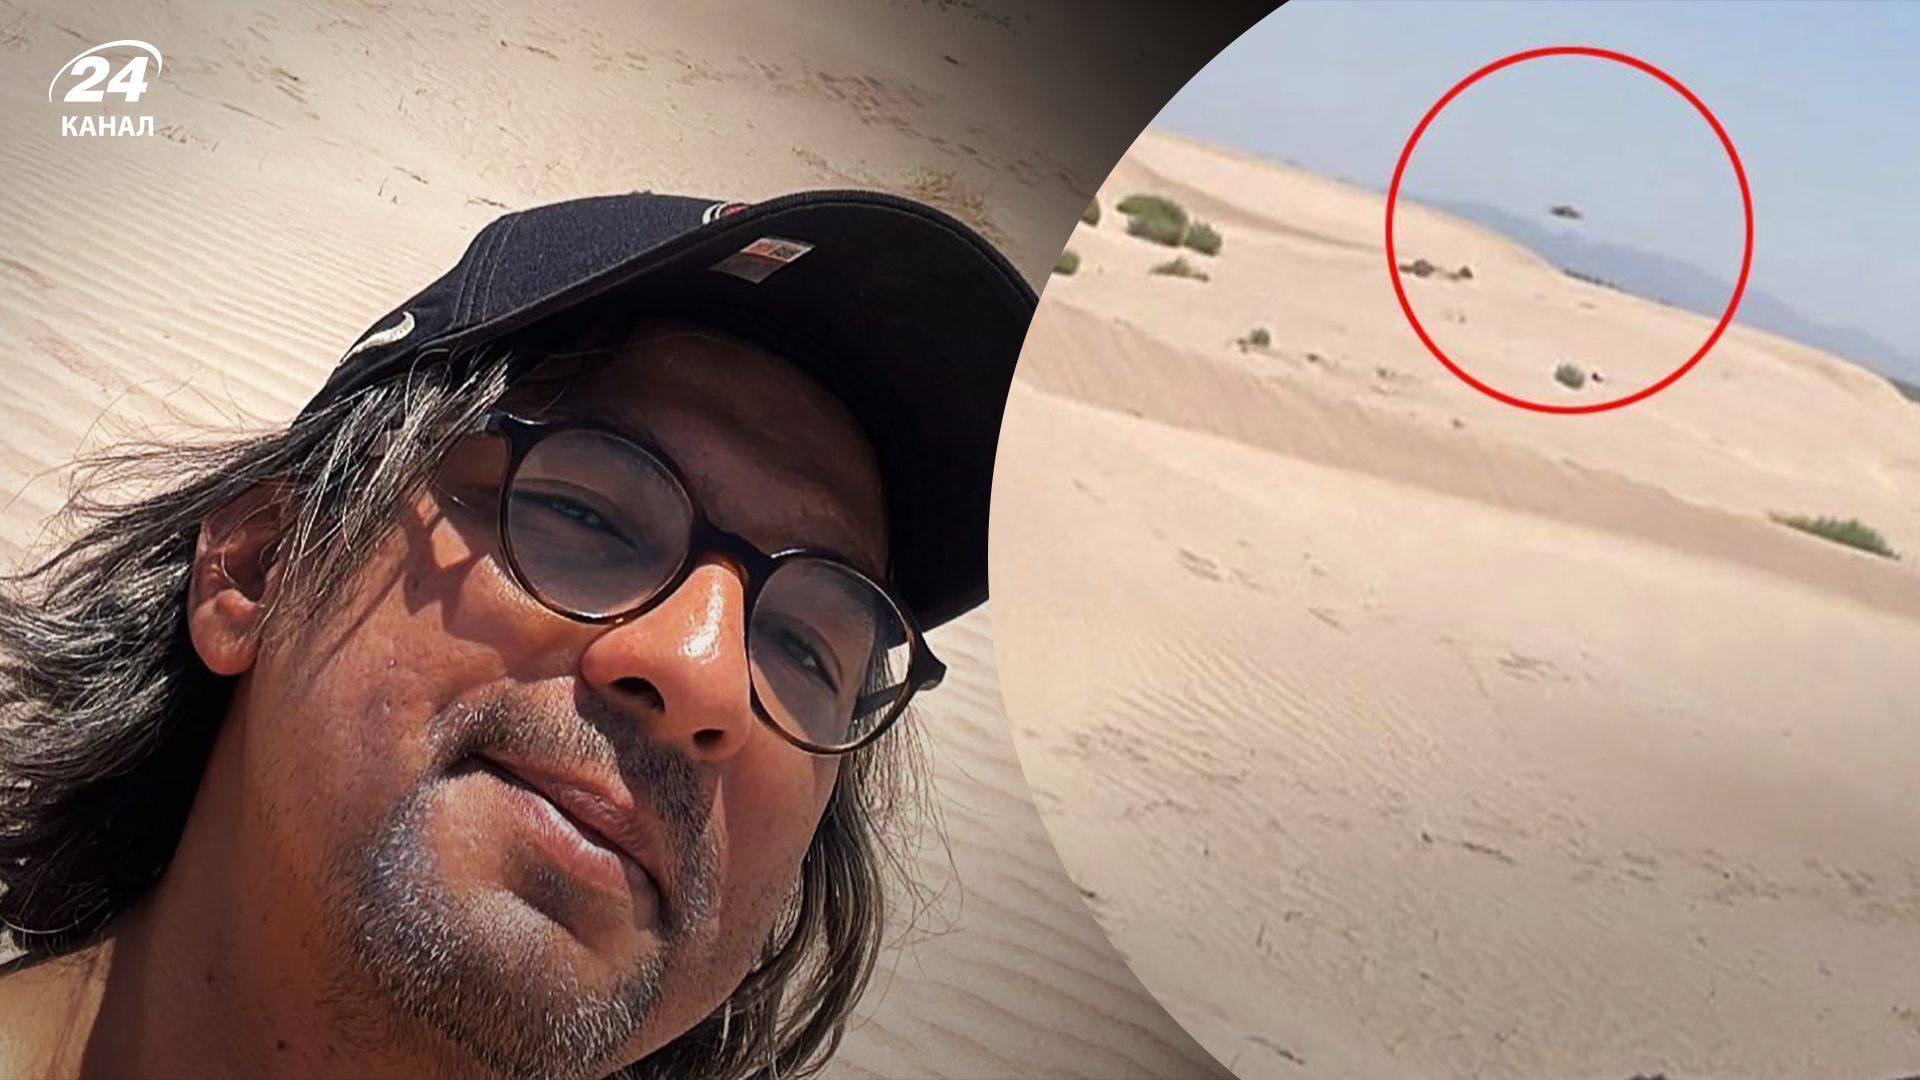 Турист якобы случайно сфотографировал НЛО в пустыне.